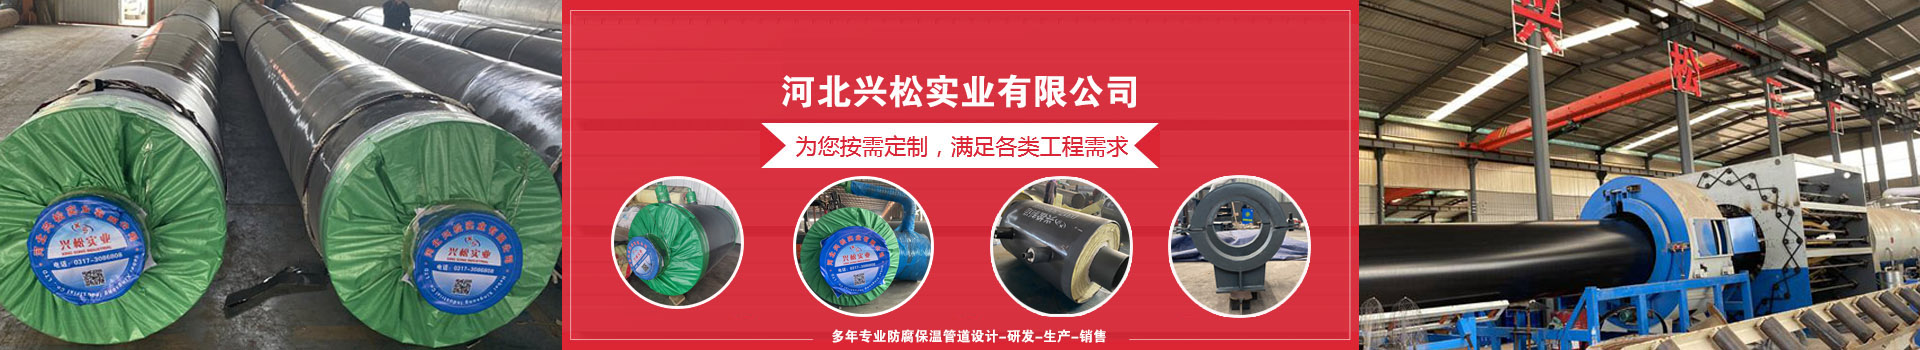 江苏泗阳意杨产业园集中供热管网工程